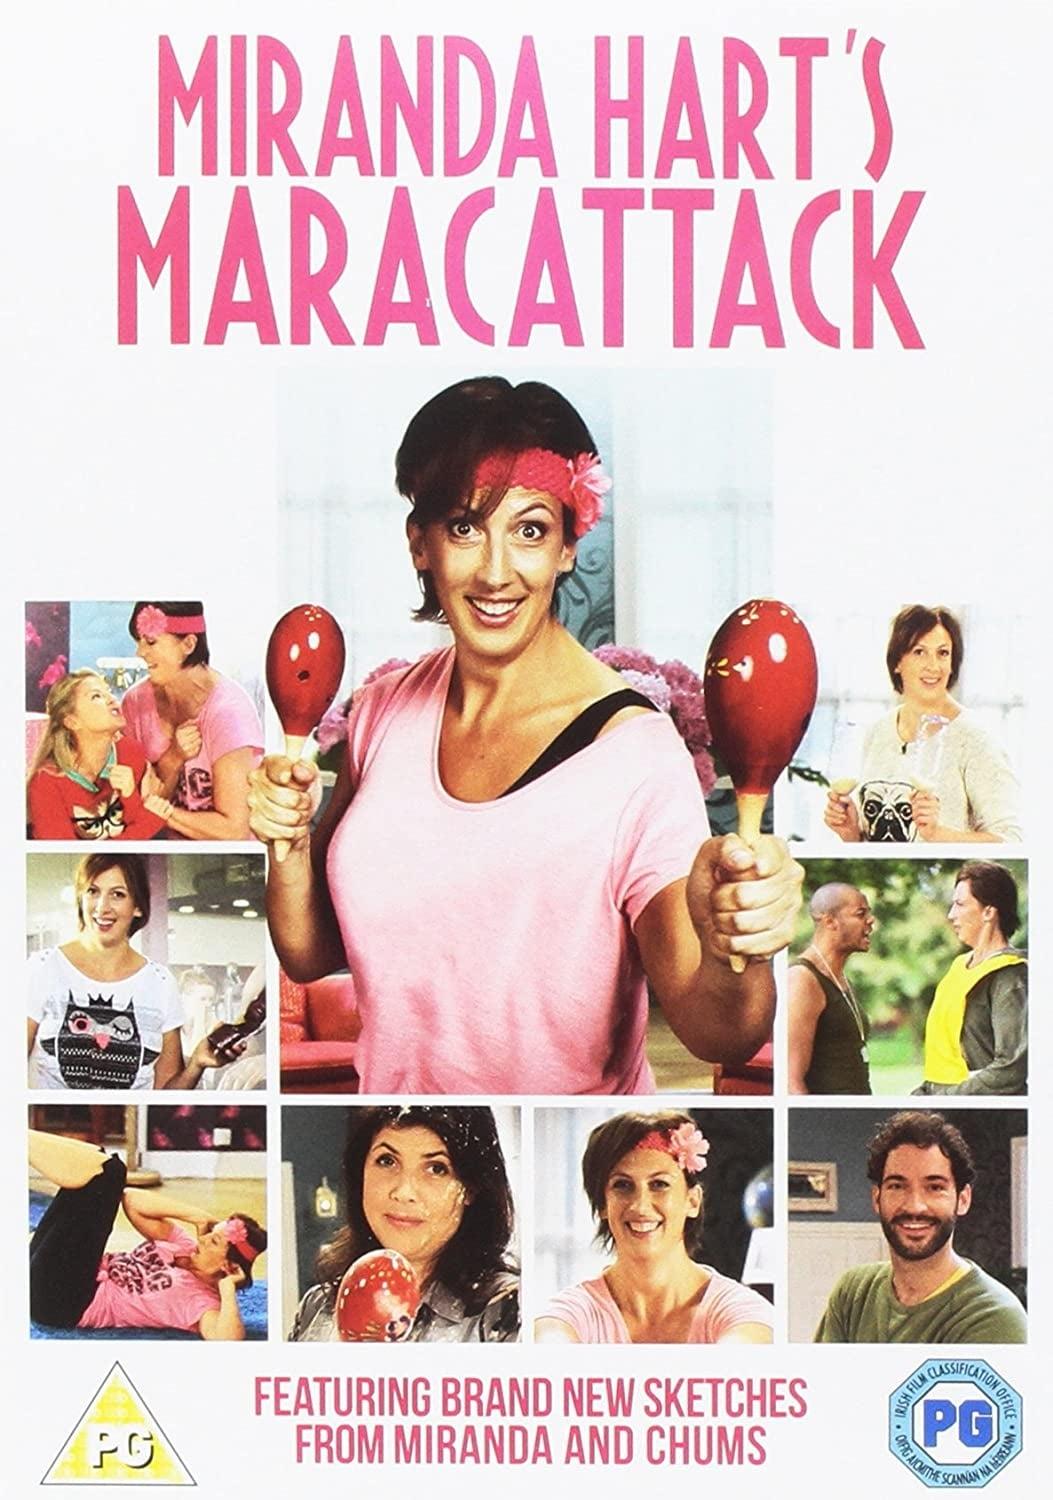 Miranda Hart’s Maracattack poster